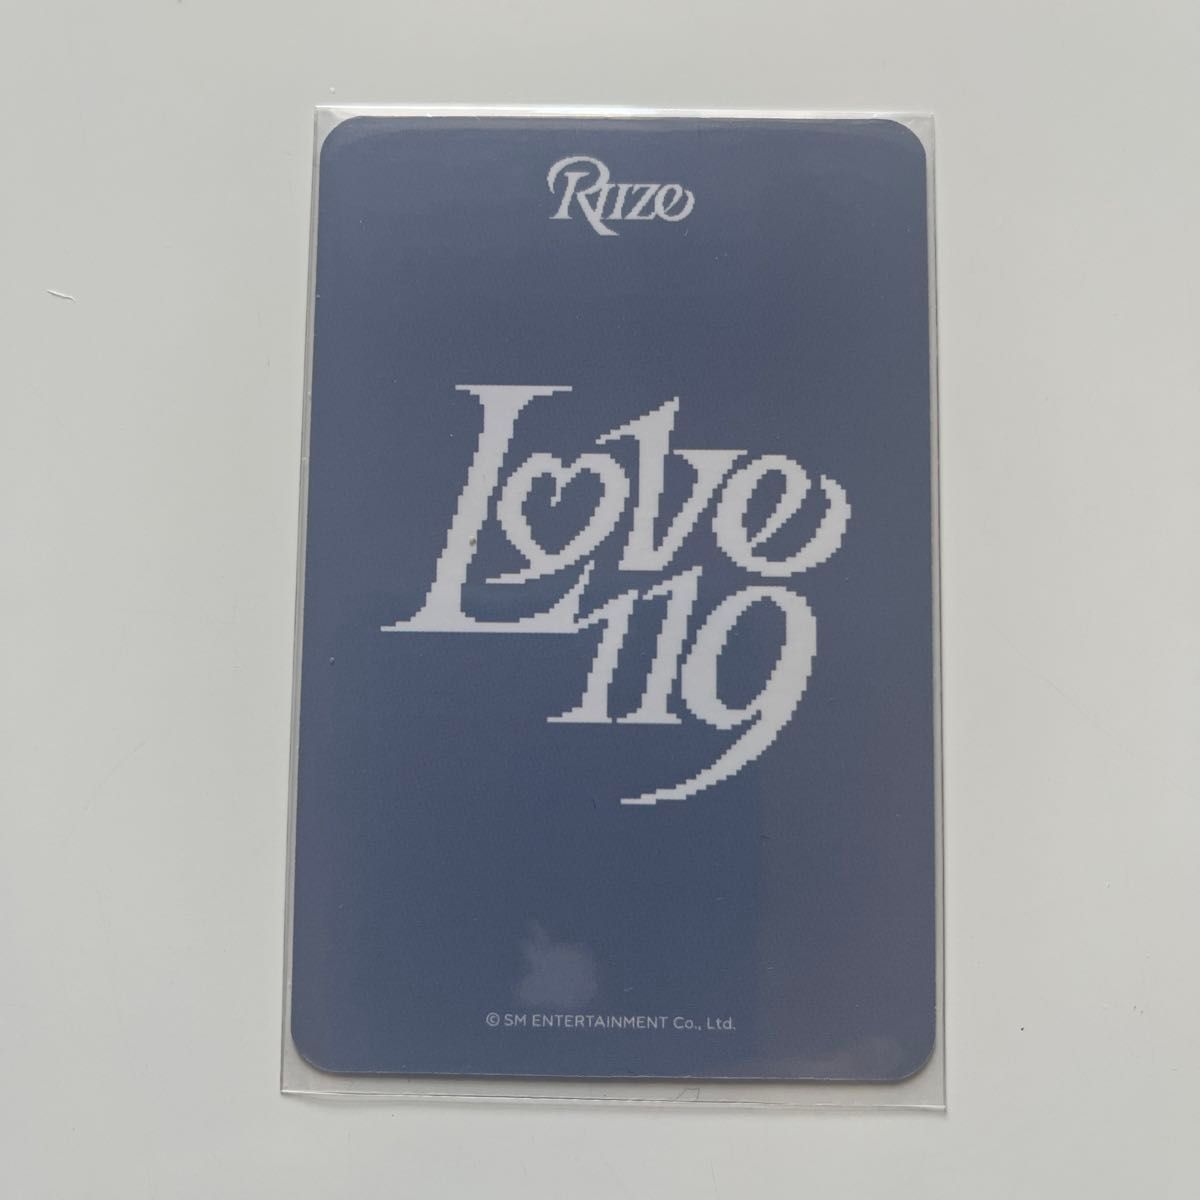 RIIZE ライズ Love119 smtown & store ラキドロ トレカ ウォンビン 正規品